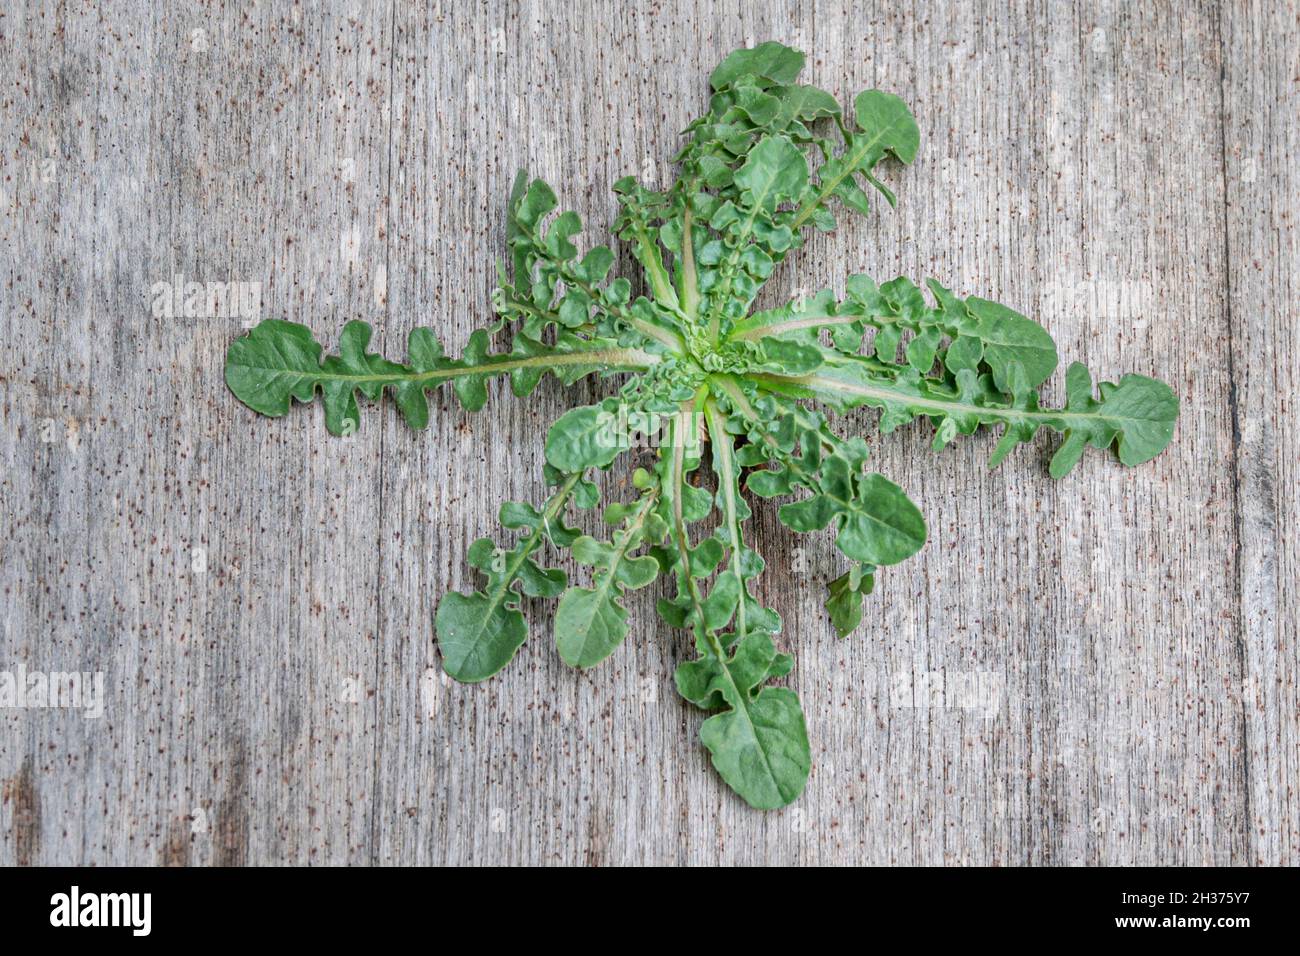 Rosette foliaire d'une jeune puse de Shepherds / Capsella bursa-pastoris plante autrefois utilisée en médecine, et aujourd'hui fourragée comme comestible Banque D'Images